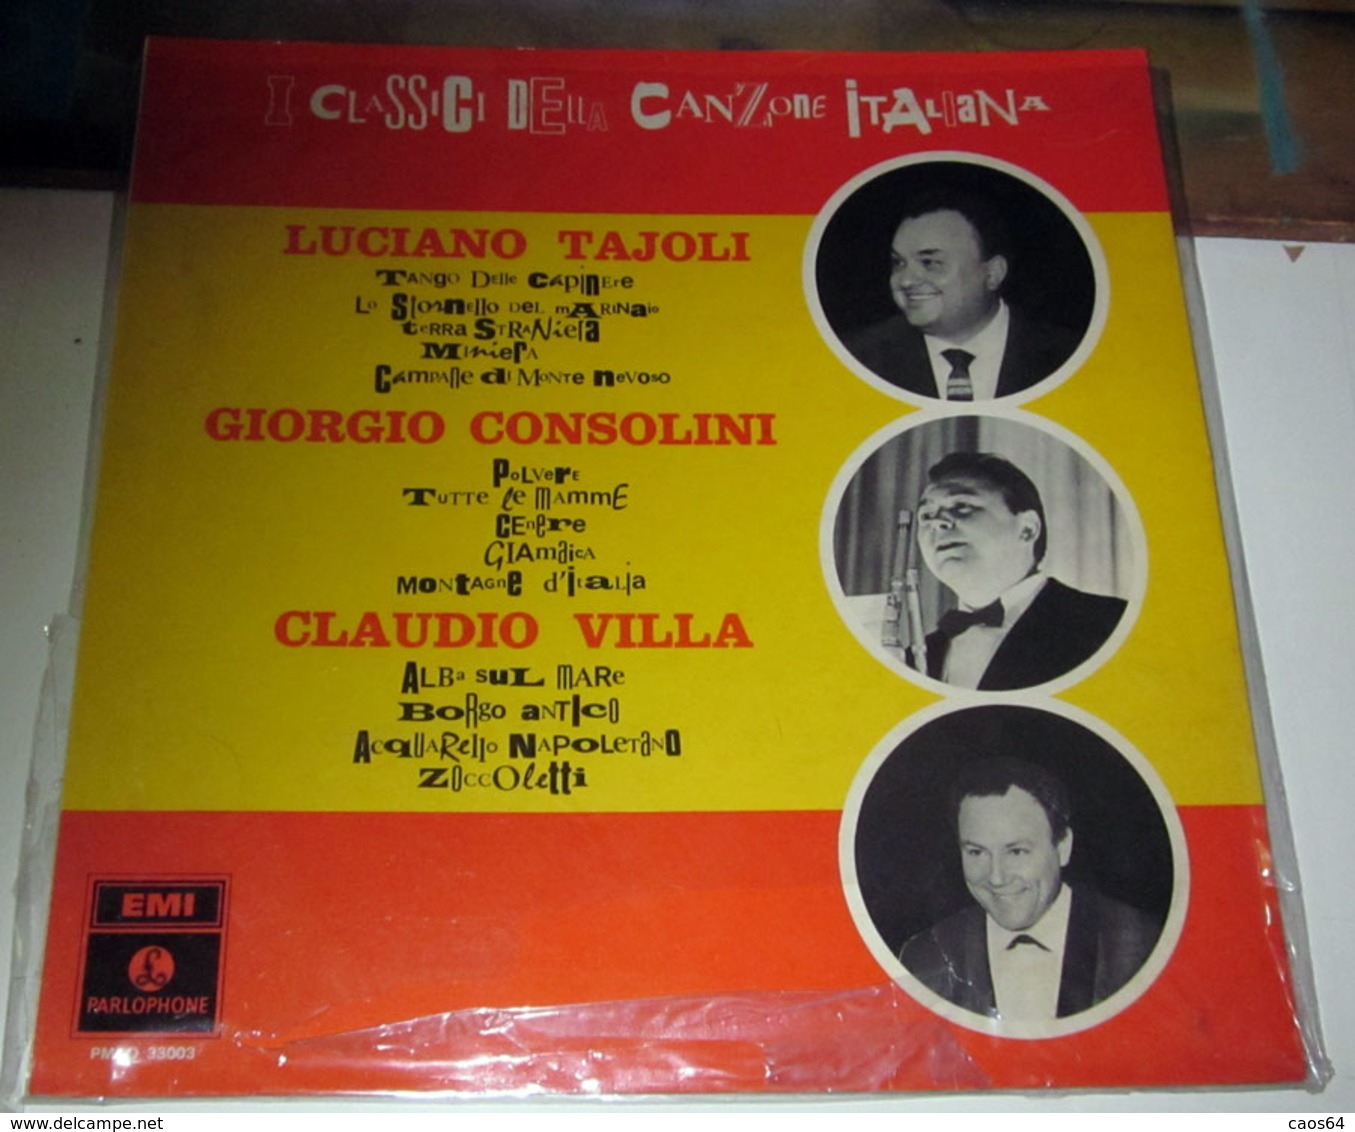 LUCIANO TAJOLI GIORGIO CONSOLINI CLAUDIO VILLA I CLASSICI DELLA CANZONE ITALIANA - Other - Italian Music